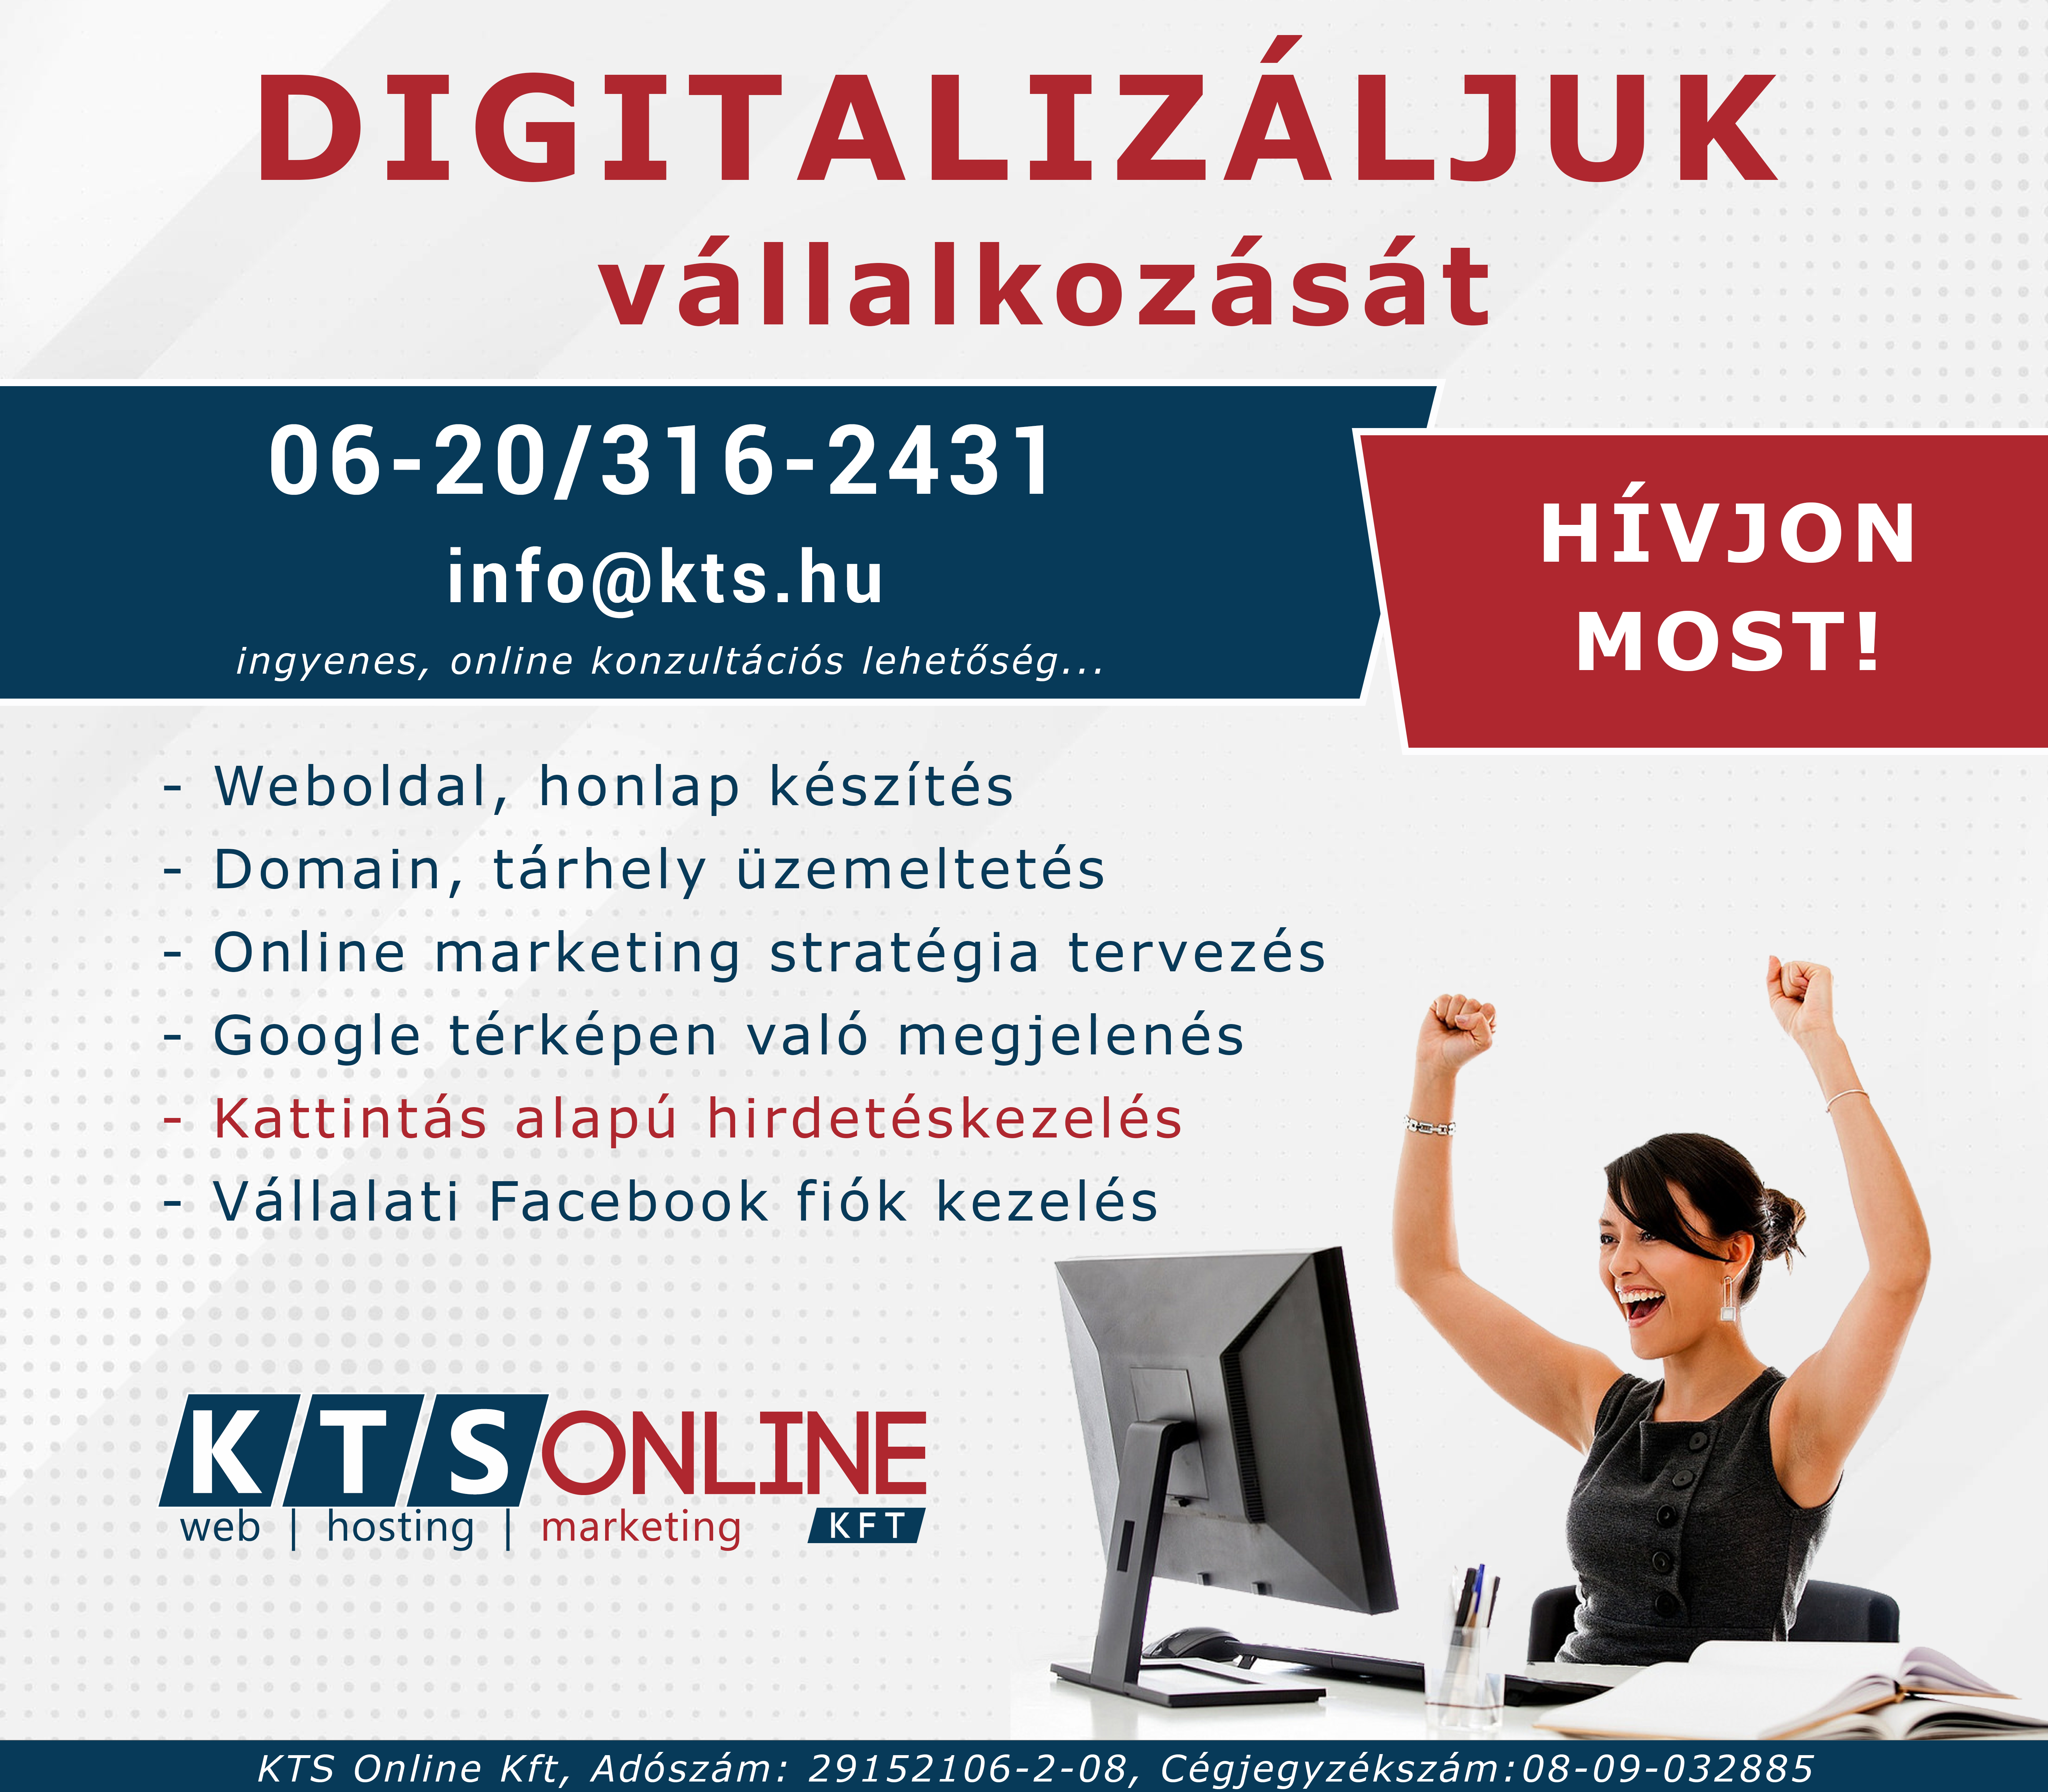 Digitalizaljuk vallalkozatas KTS Online weoldal készítés győr